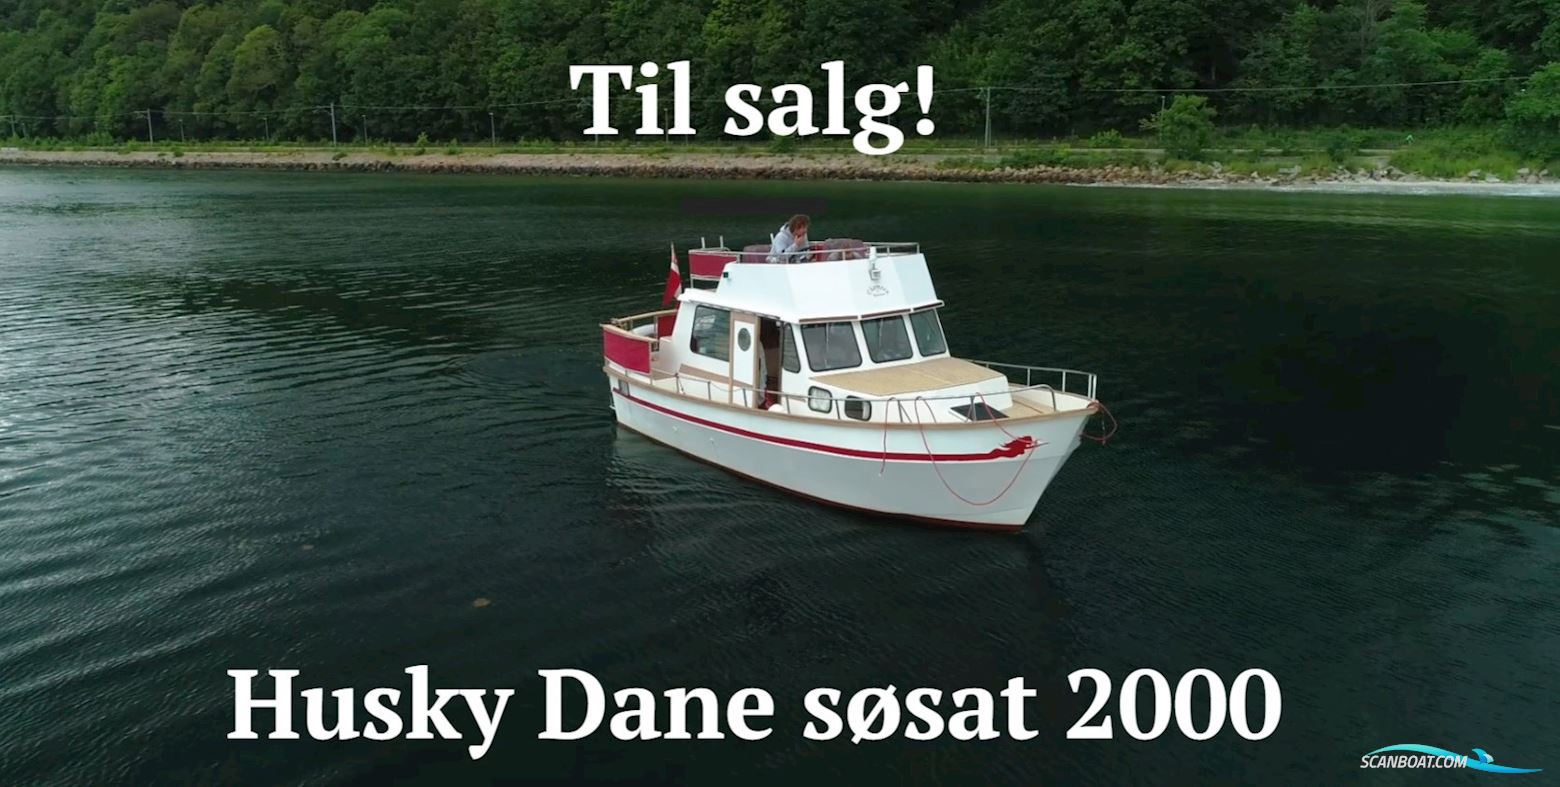 Husky Dane 85 Motorboot 1998, mit Iveco motor, Dänemark